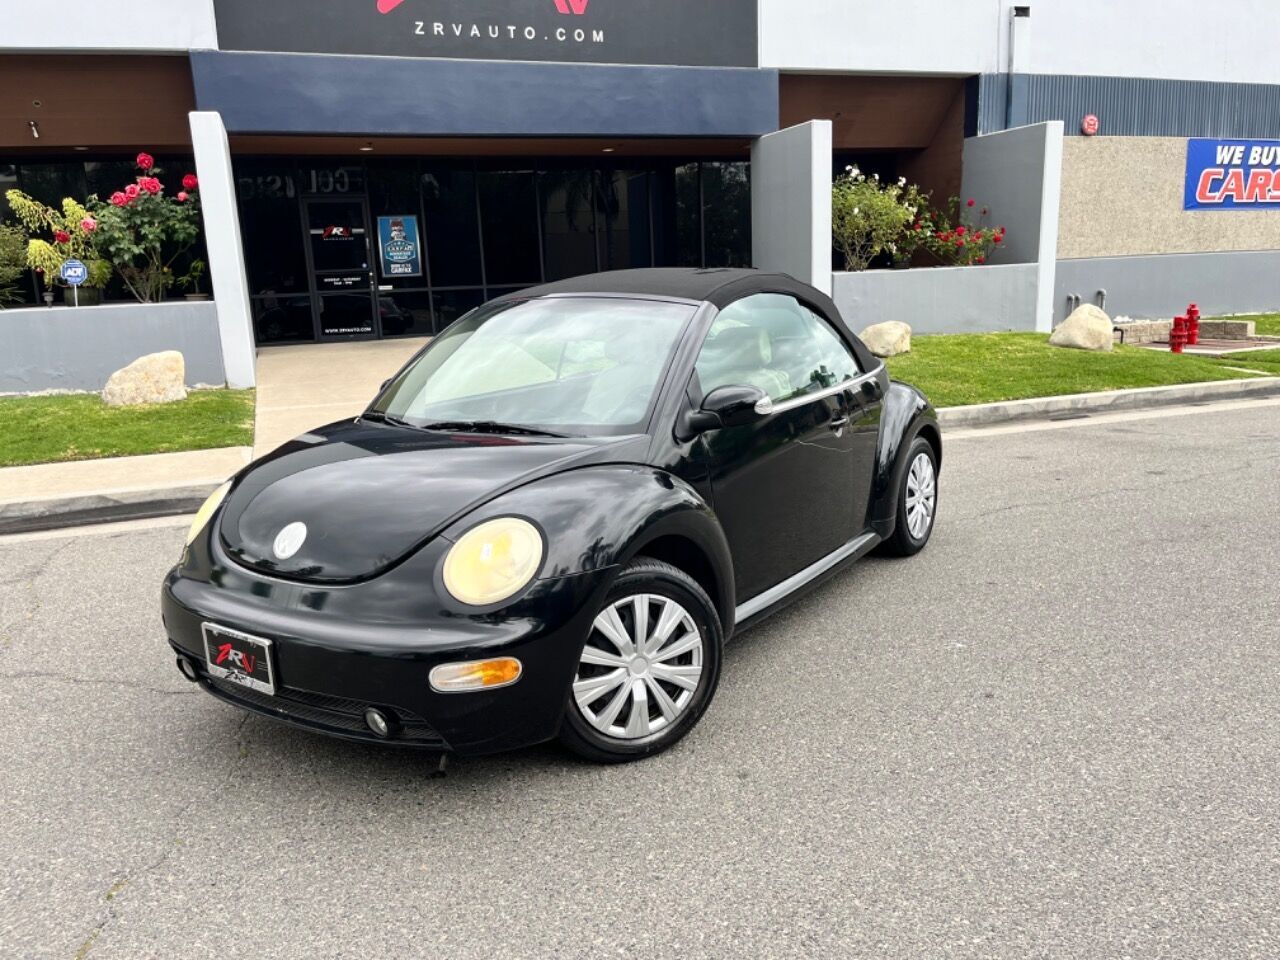 2004 Volkswagen New Beetle Convertible GLS